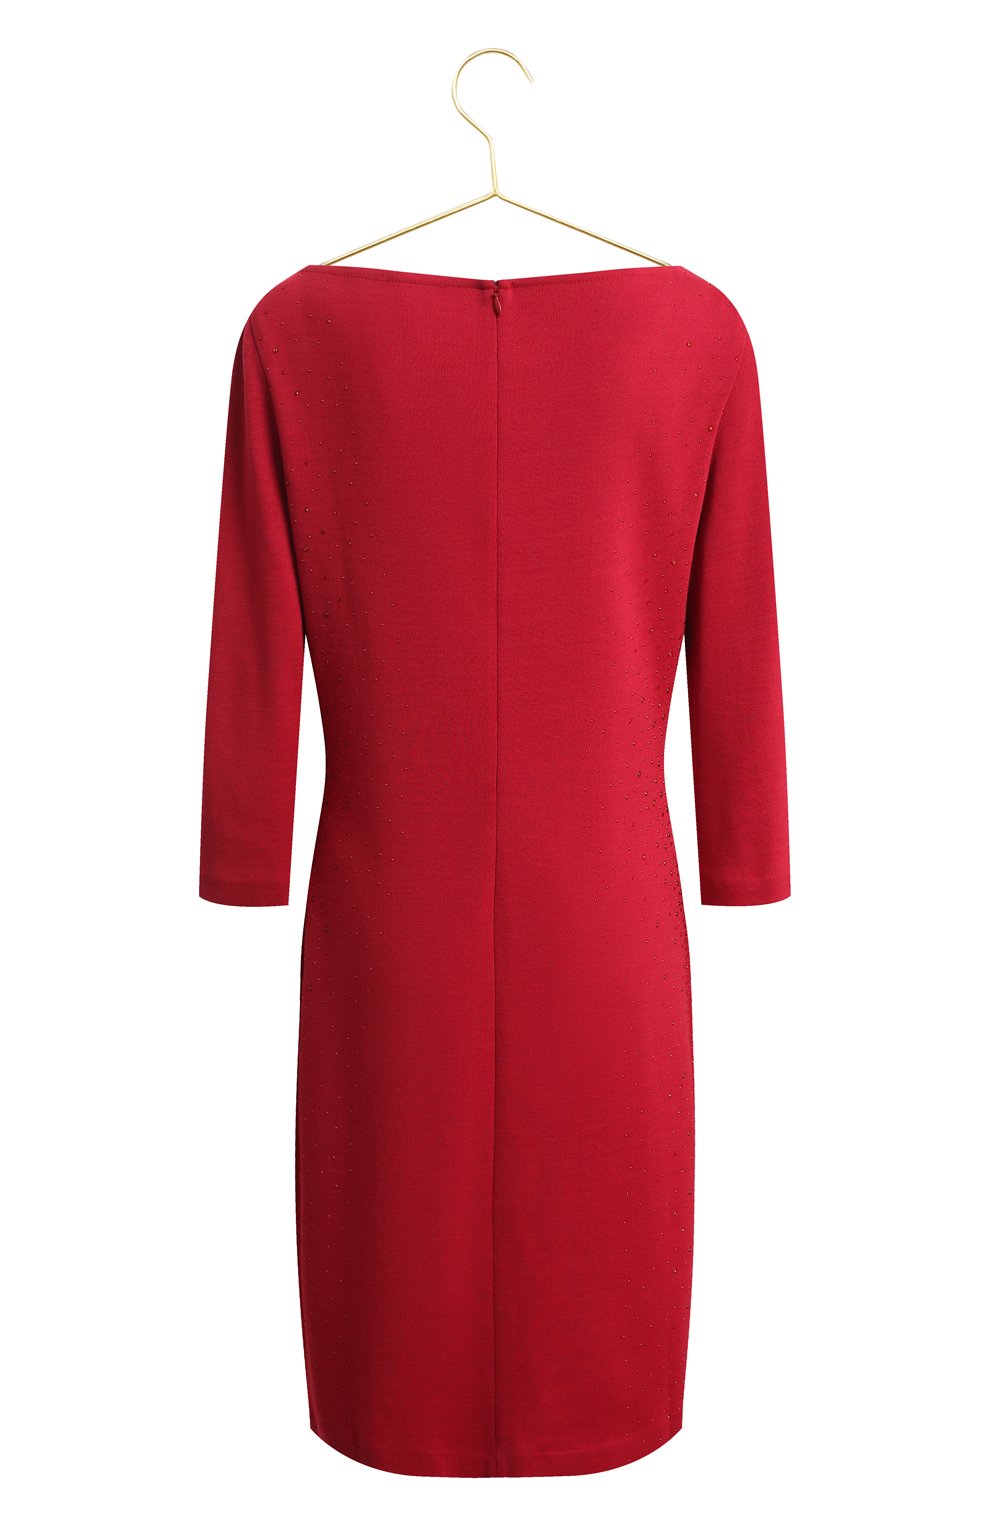 Платье из шерсти и вискозы | St. John | Красный - 2